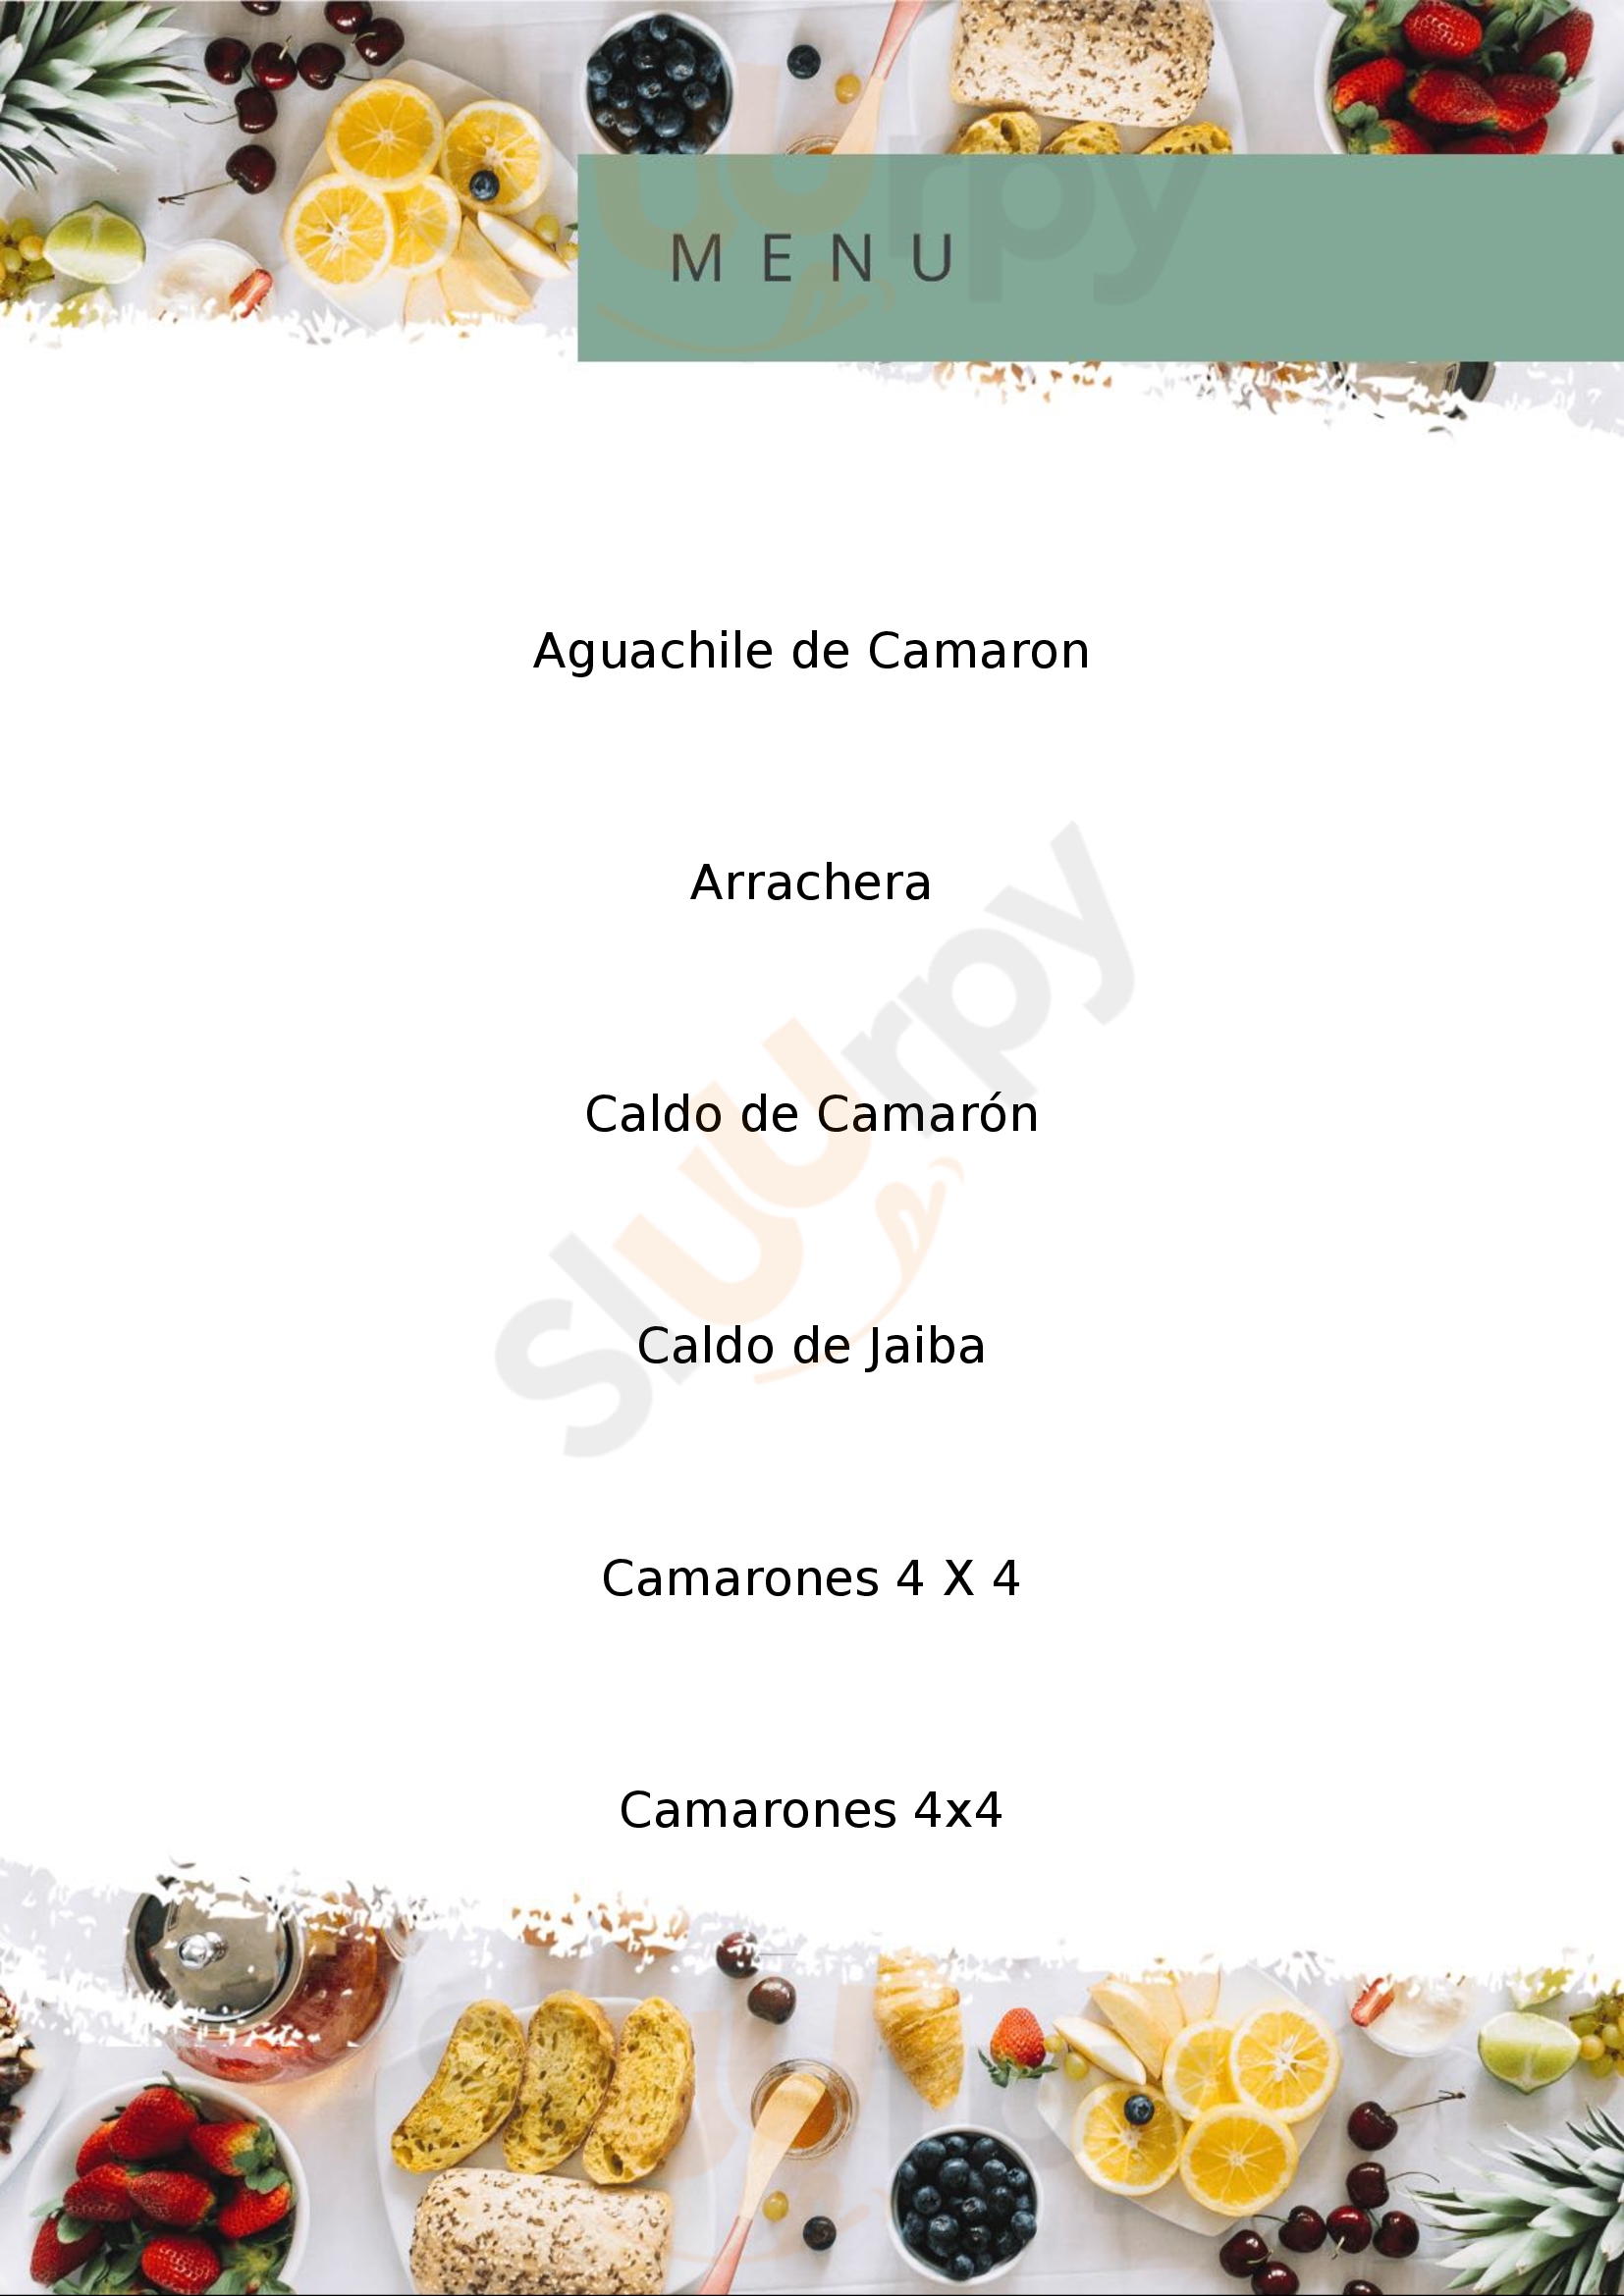 Marisquería Don Cangrejo Puebla Menu - 1